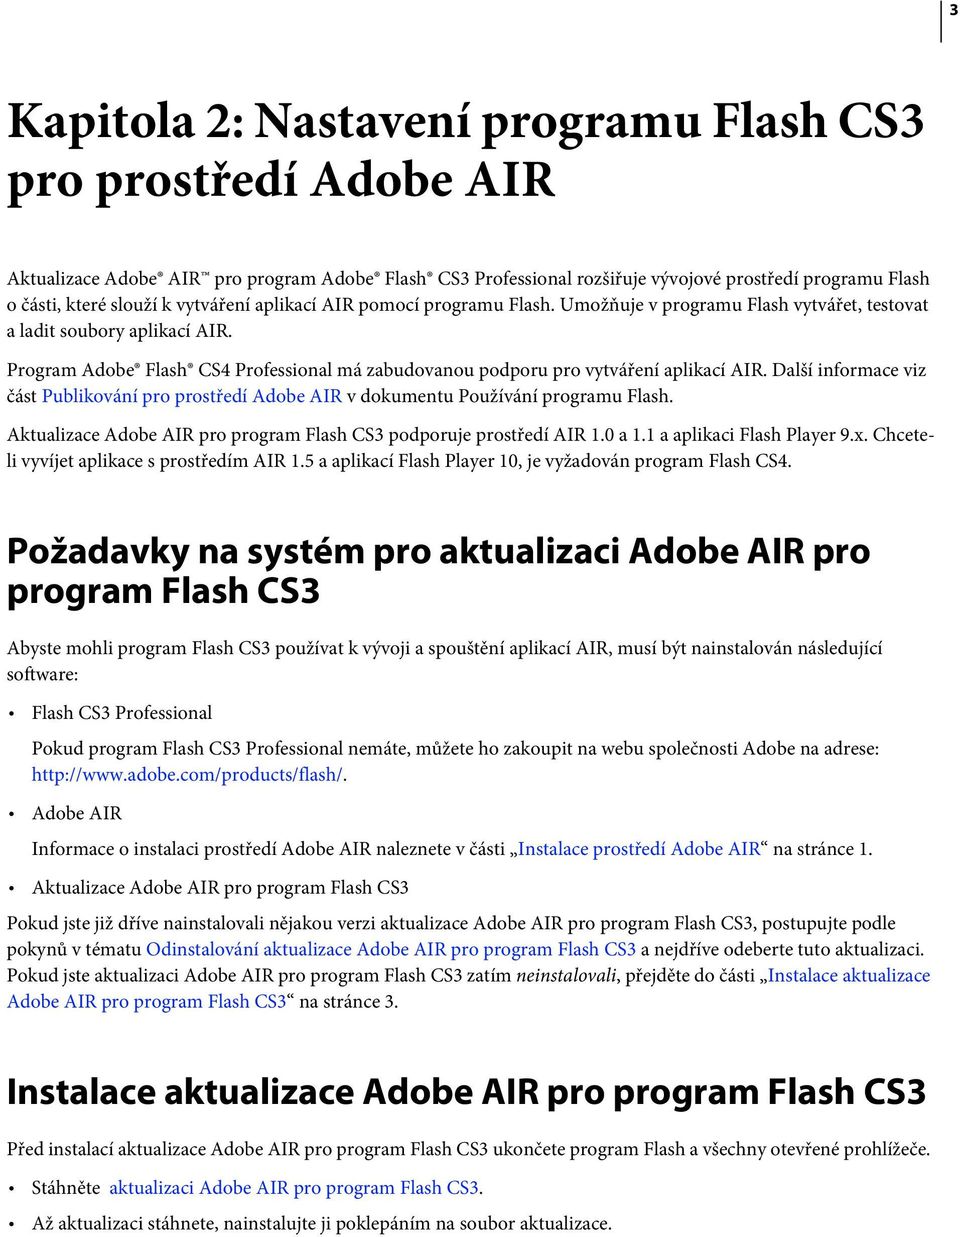 Program Adobe Flash CS4 Professional má zabudovanou podporu pro vytváření aplikací AIR. Další informace viz část Publikování pro prostředí Adobe AIR v dokumentu Používání programu Flash.